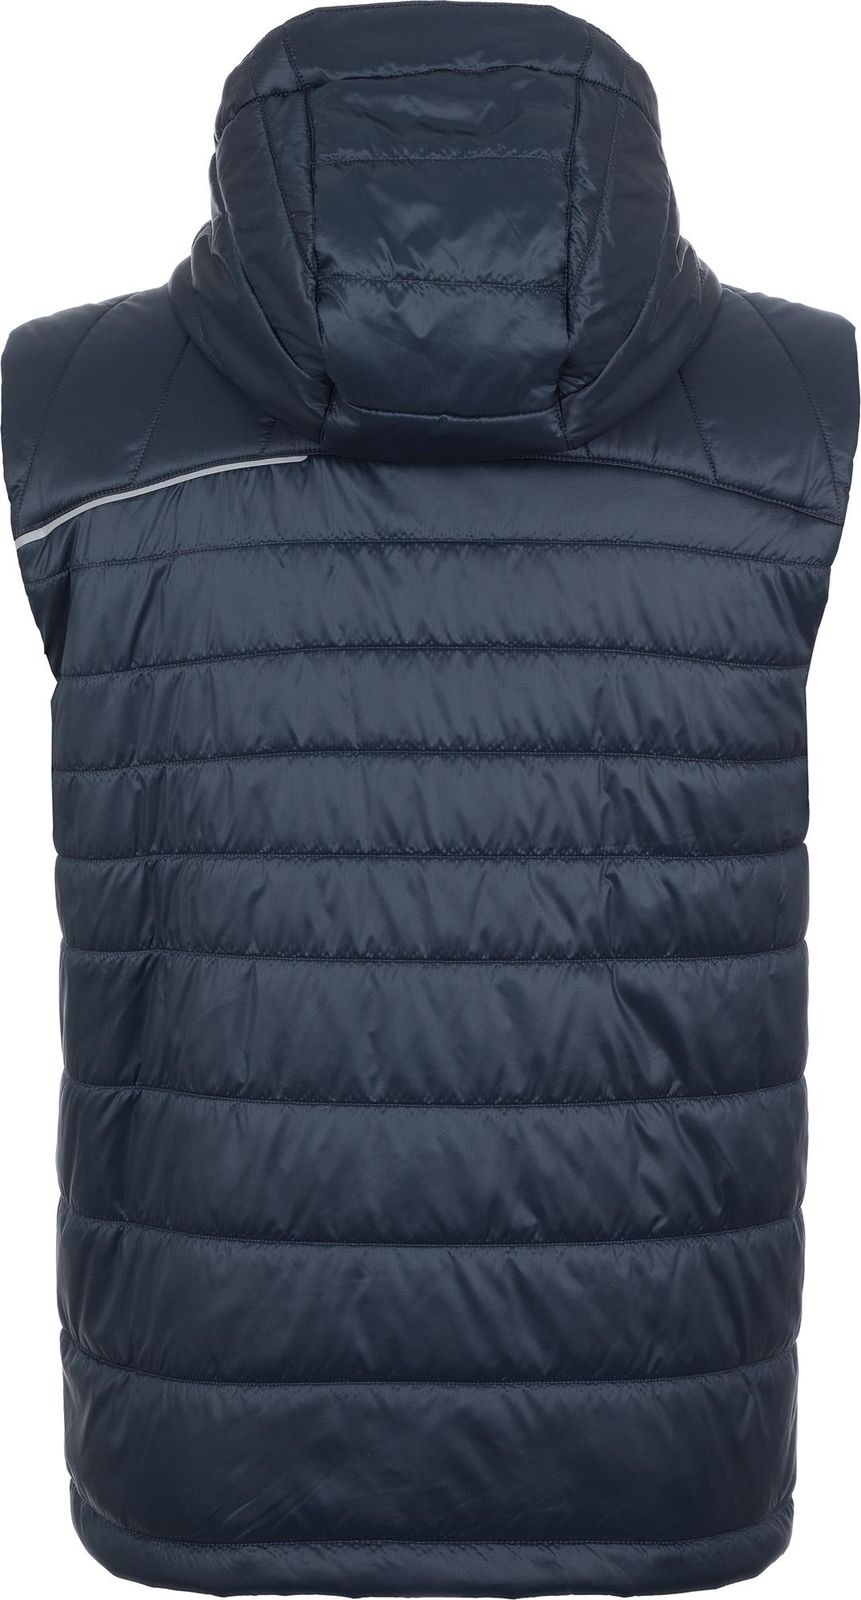   Merrell Men's Sleeveless Jacket Vest, : -. S19AMRVEM01-Z4.  48